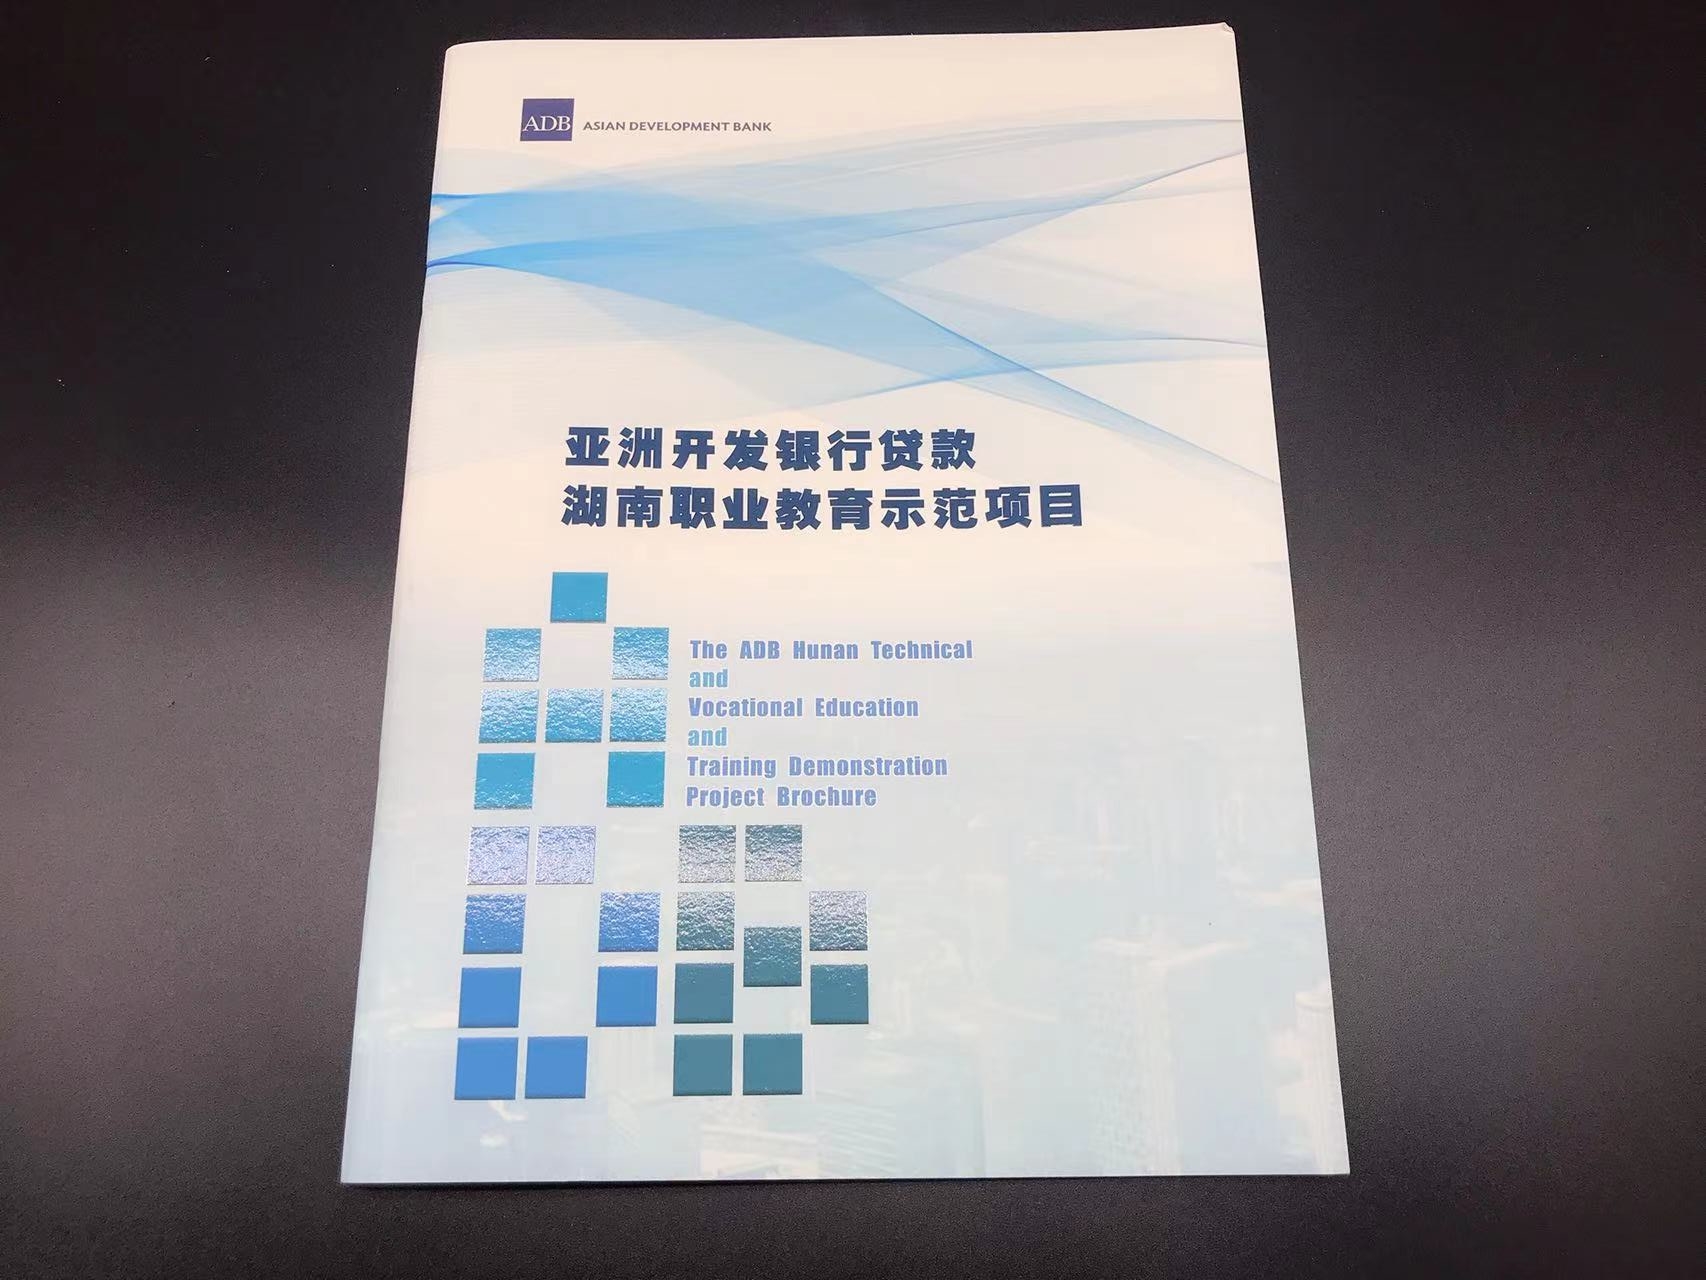 亚洲开发银行贷款湖南职业教育示范项目2